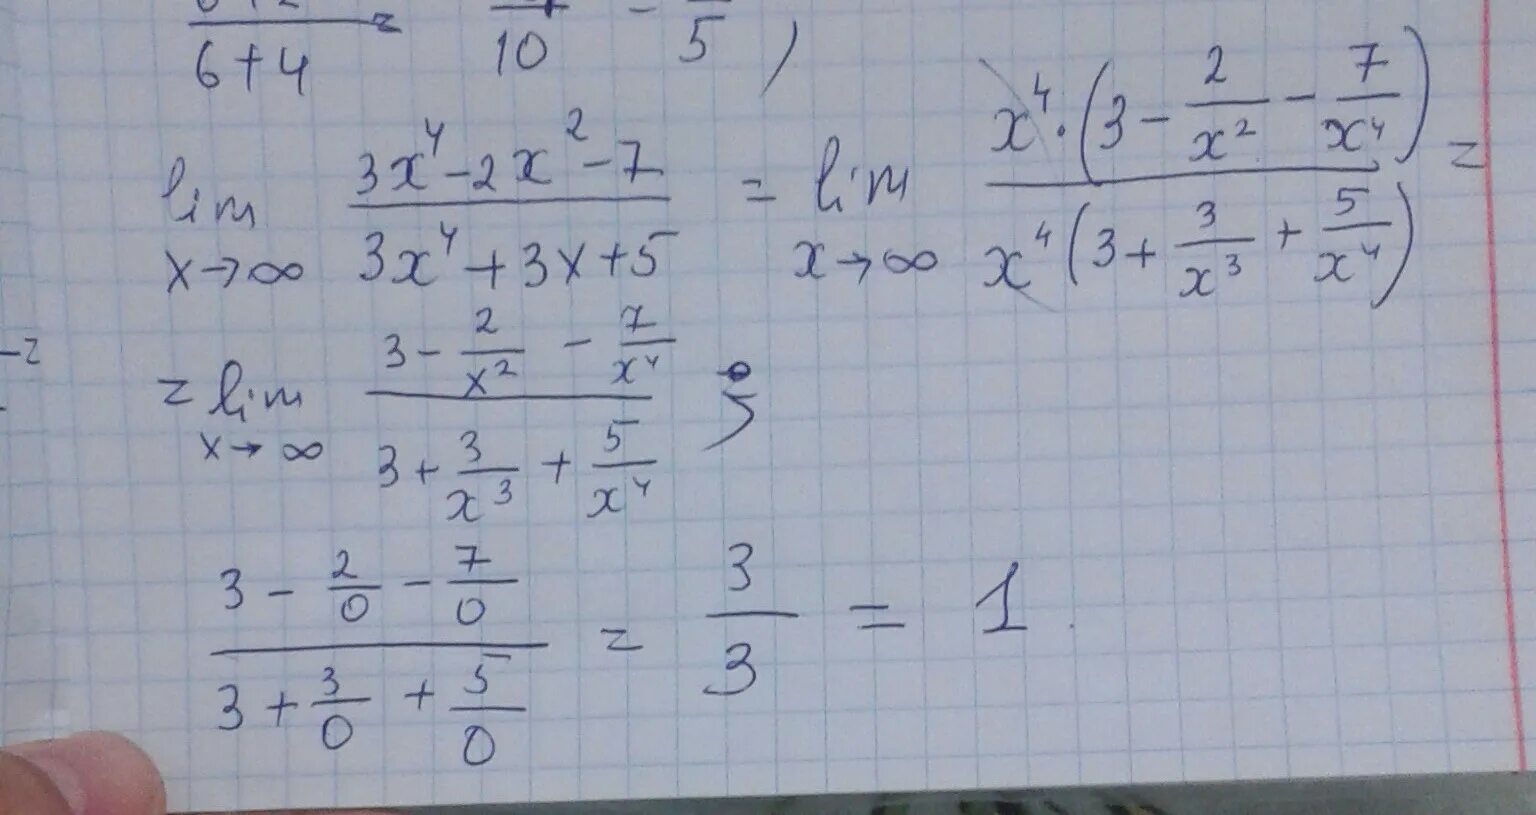 3 7 78 3 7. Lim x стремится к бесконечности 2/x 2+3x. Lim x стремится к бесконечности x^2-4x+3/x+5. Lim x стремиться к бесконечности ( 2x/2x-3)^3x. Lim x стремится к бесконечности 3+x-5x4.